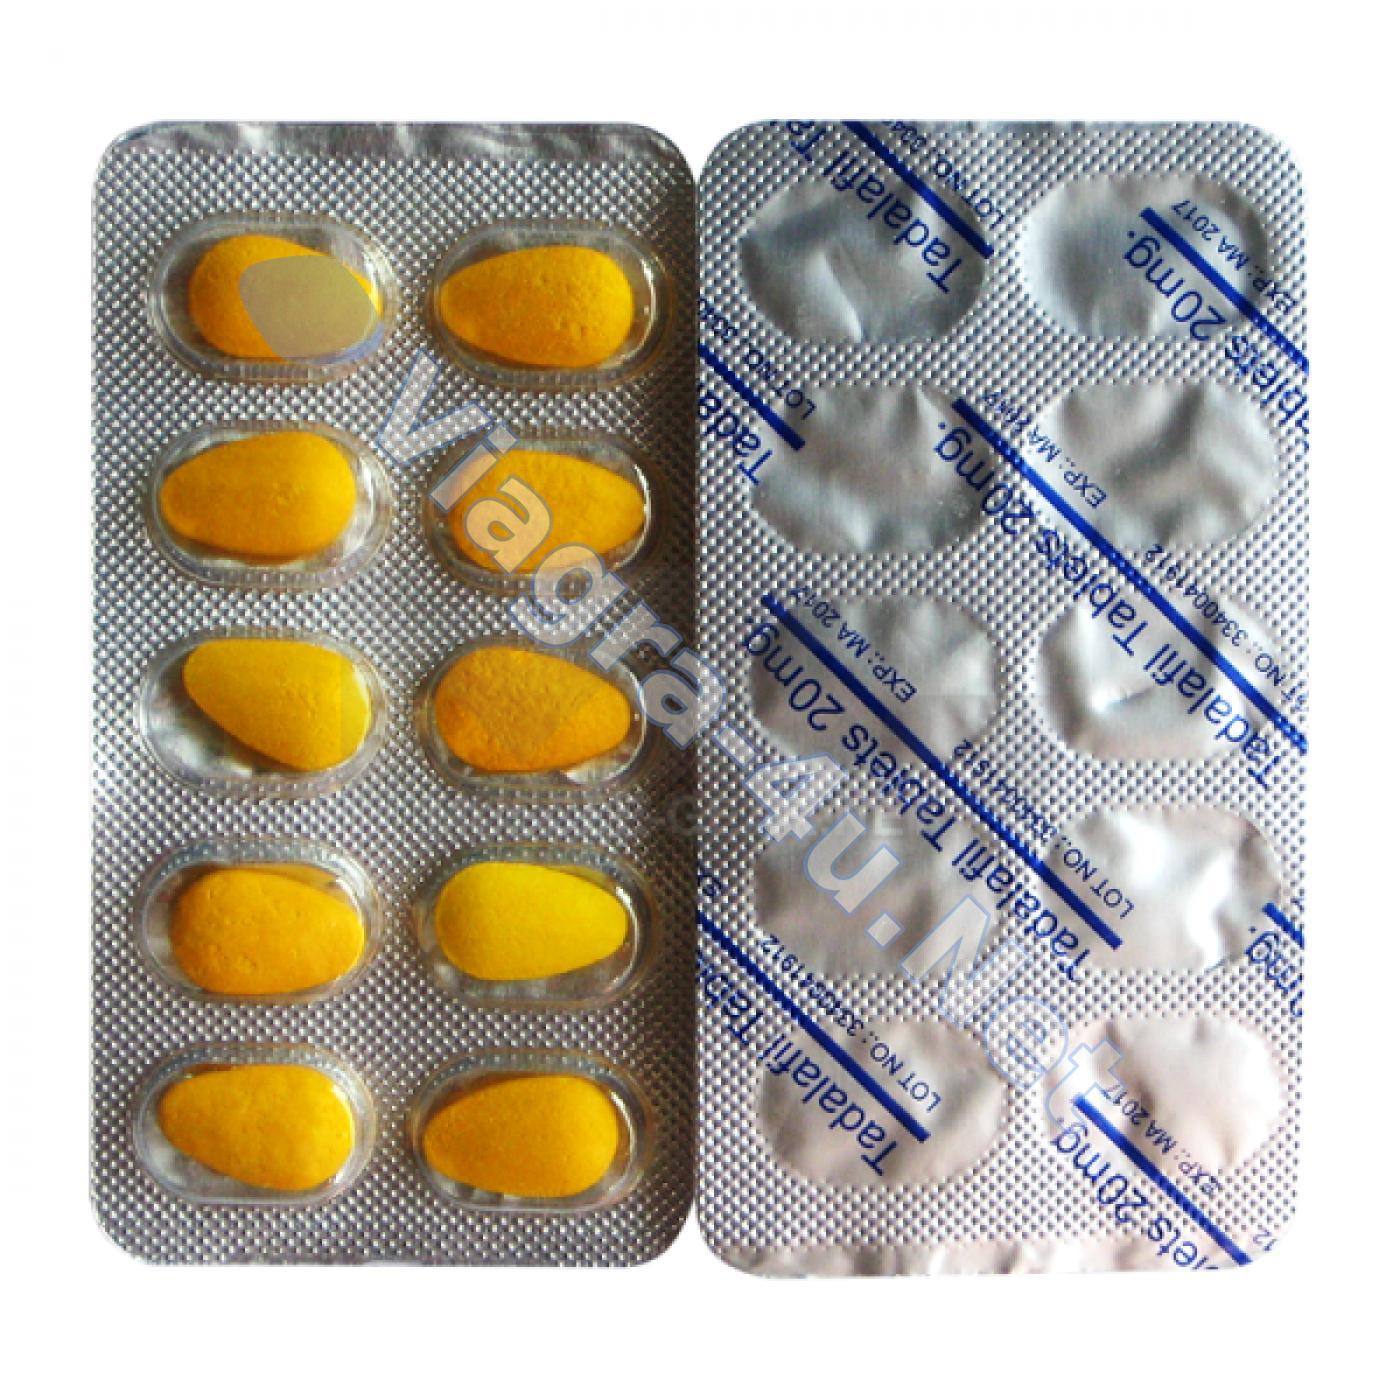 vibramycin generic